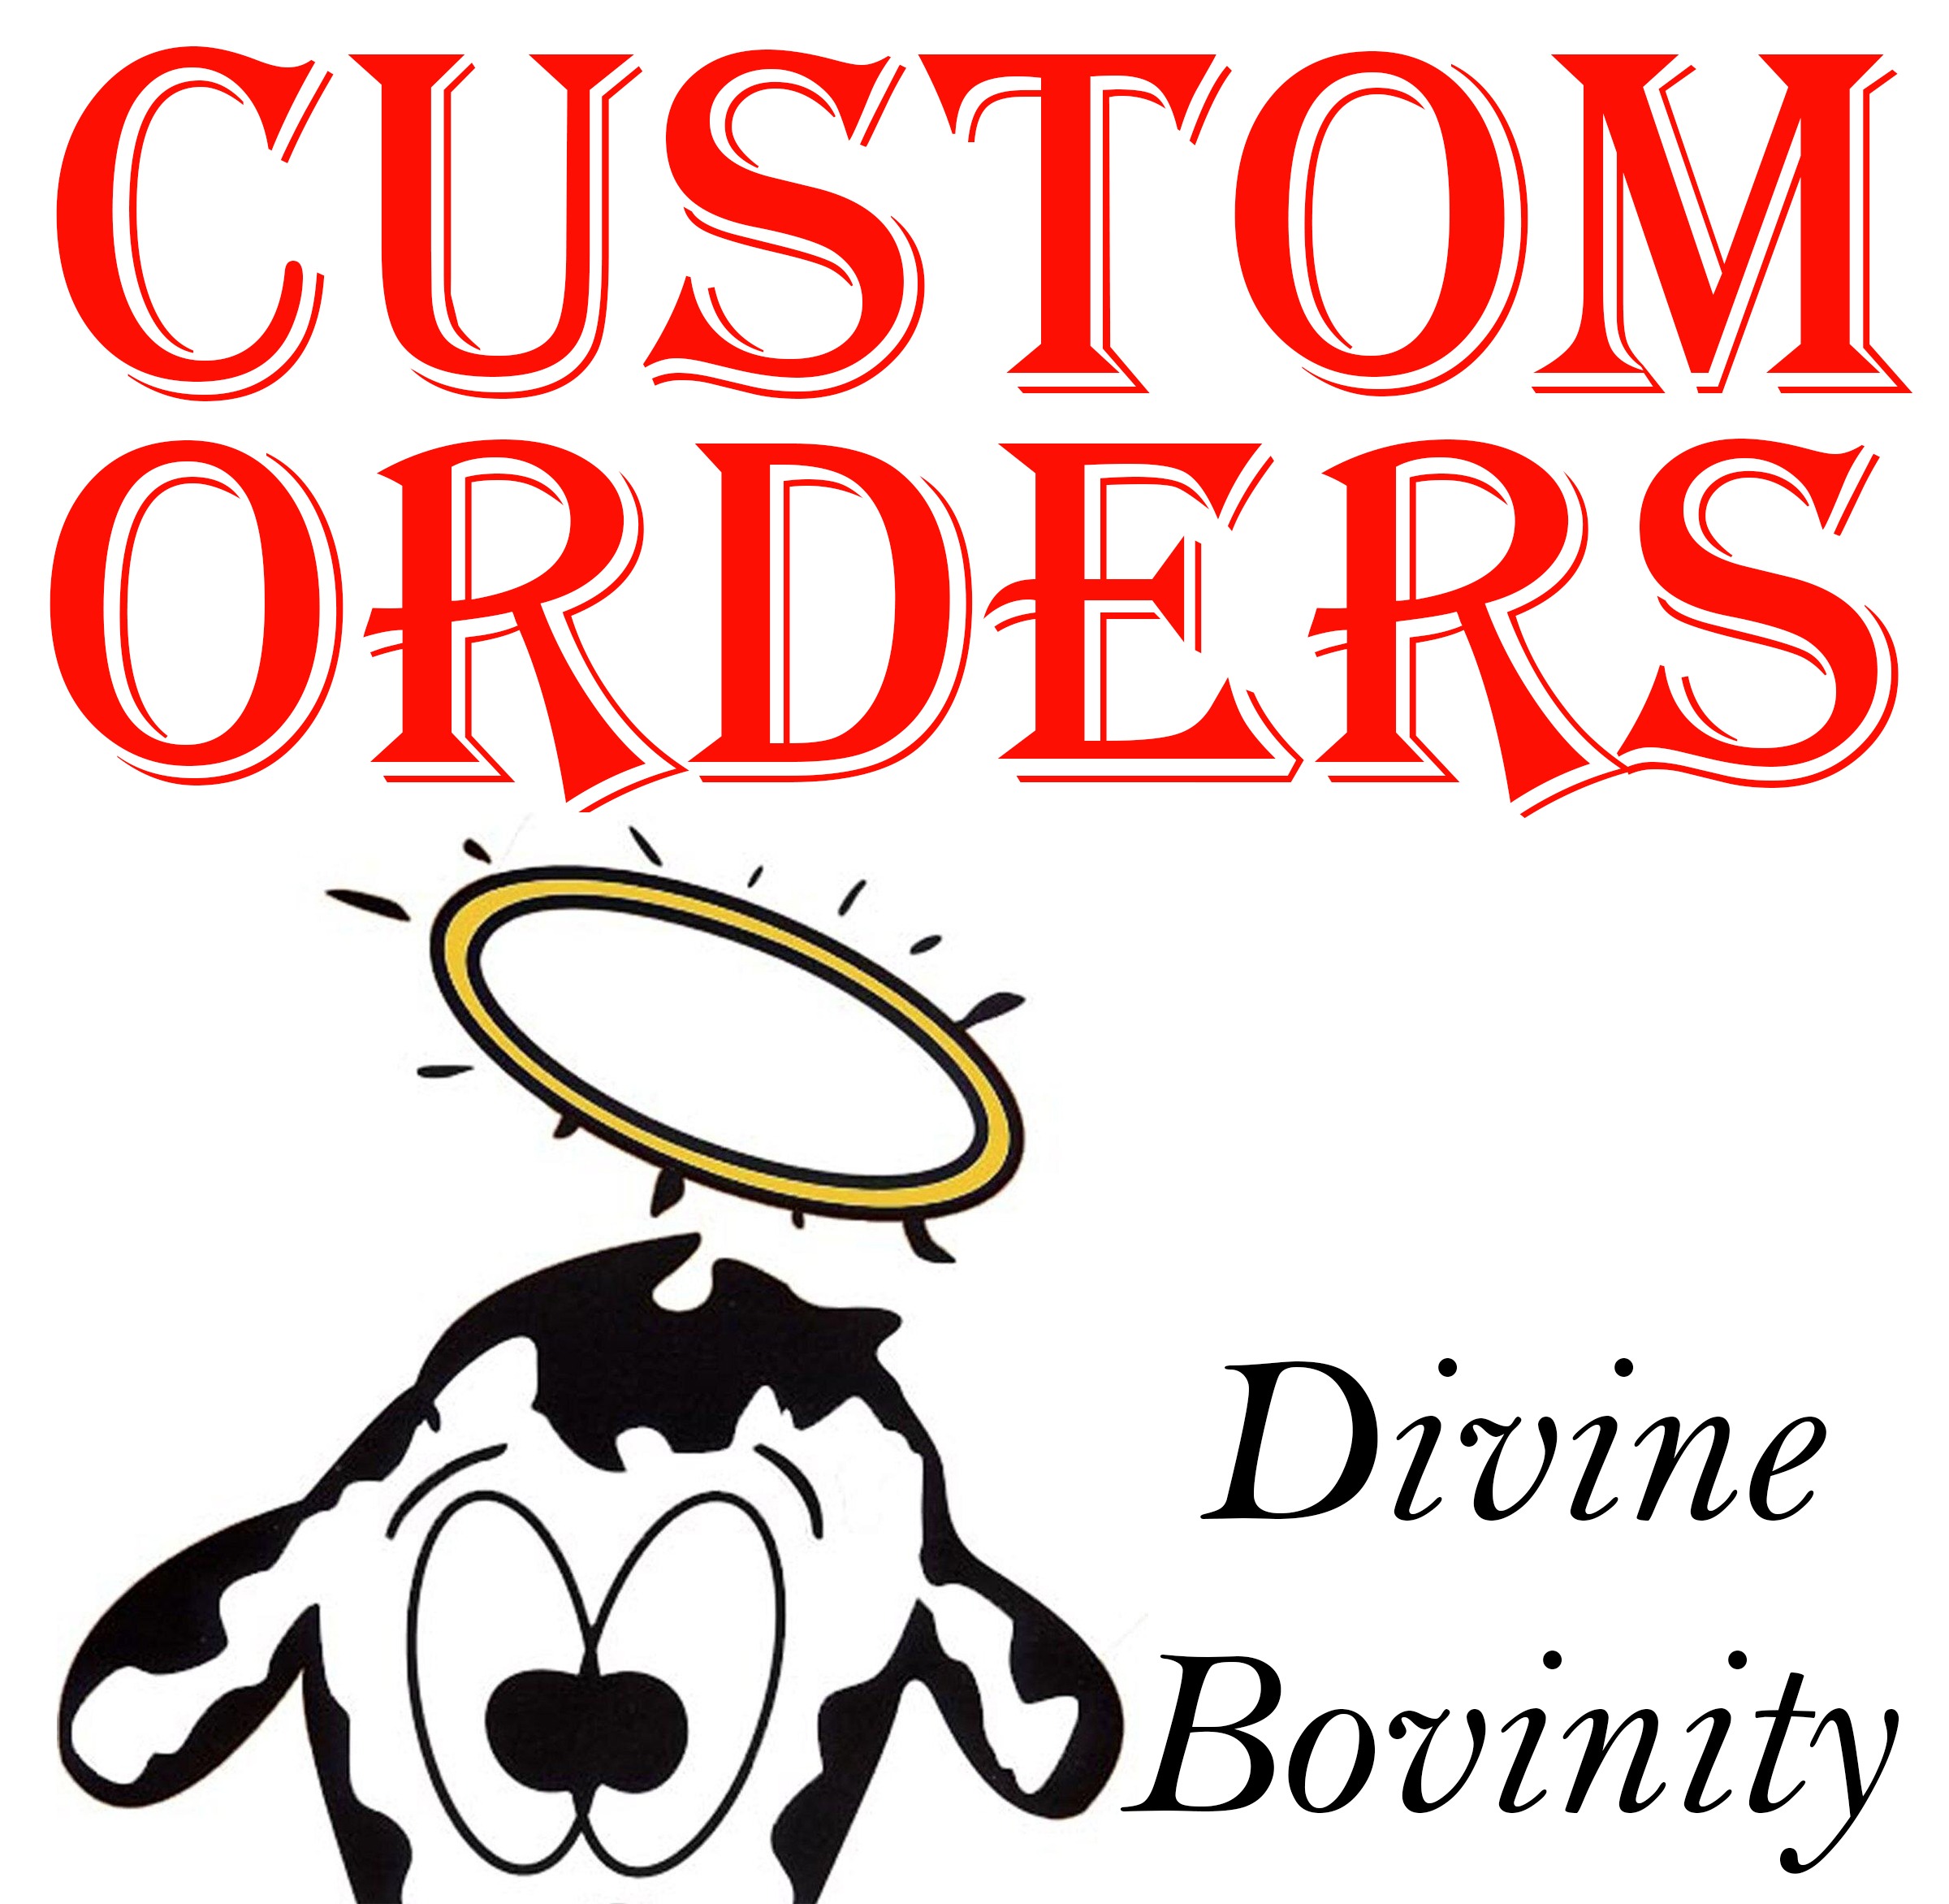 Custom Order Iron On Transfer - Divine Bovinity Design